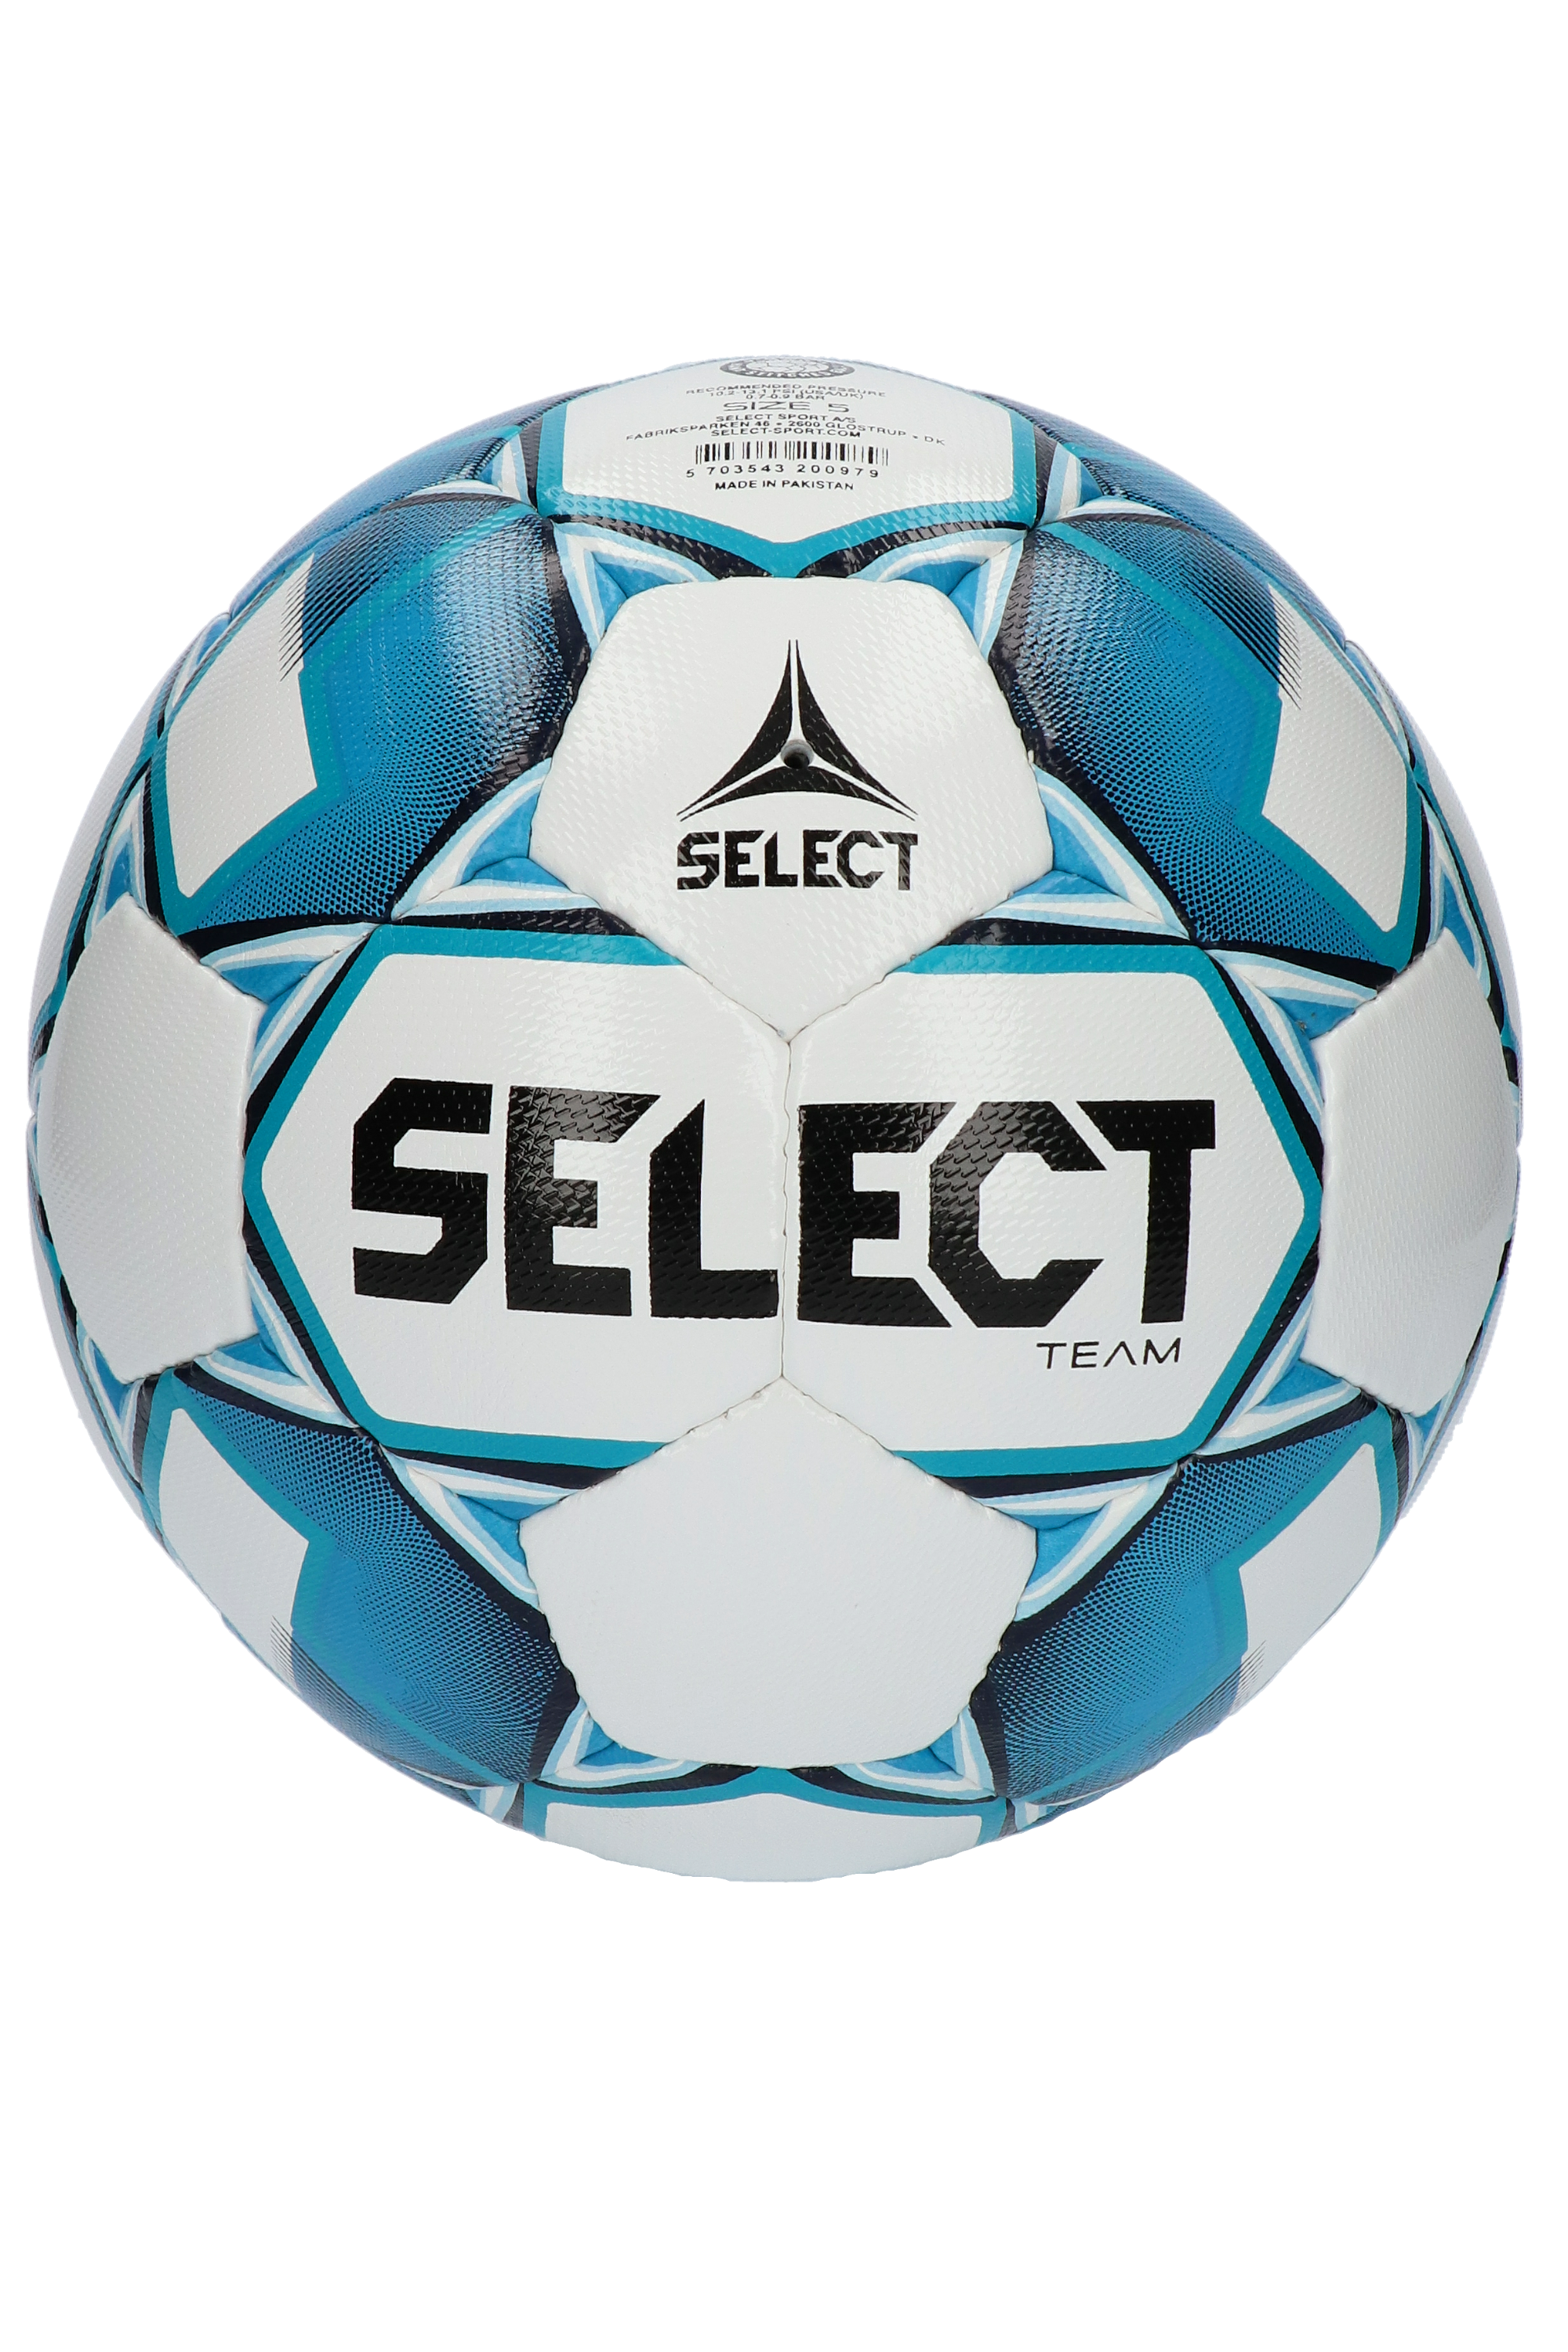 Футбольный мяч select. Футбольный мяч Селект 4. Мяч футбольный select 4 размер. Мяч футбольный select Match IMS. Мяч Селект 5.